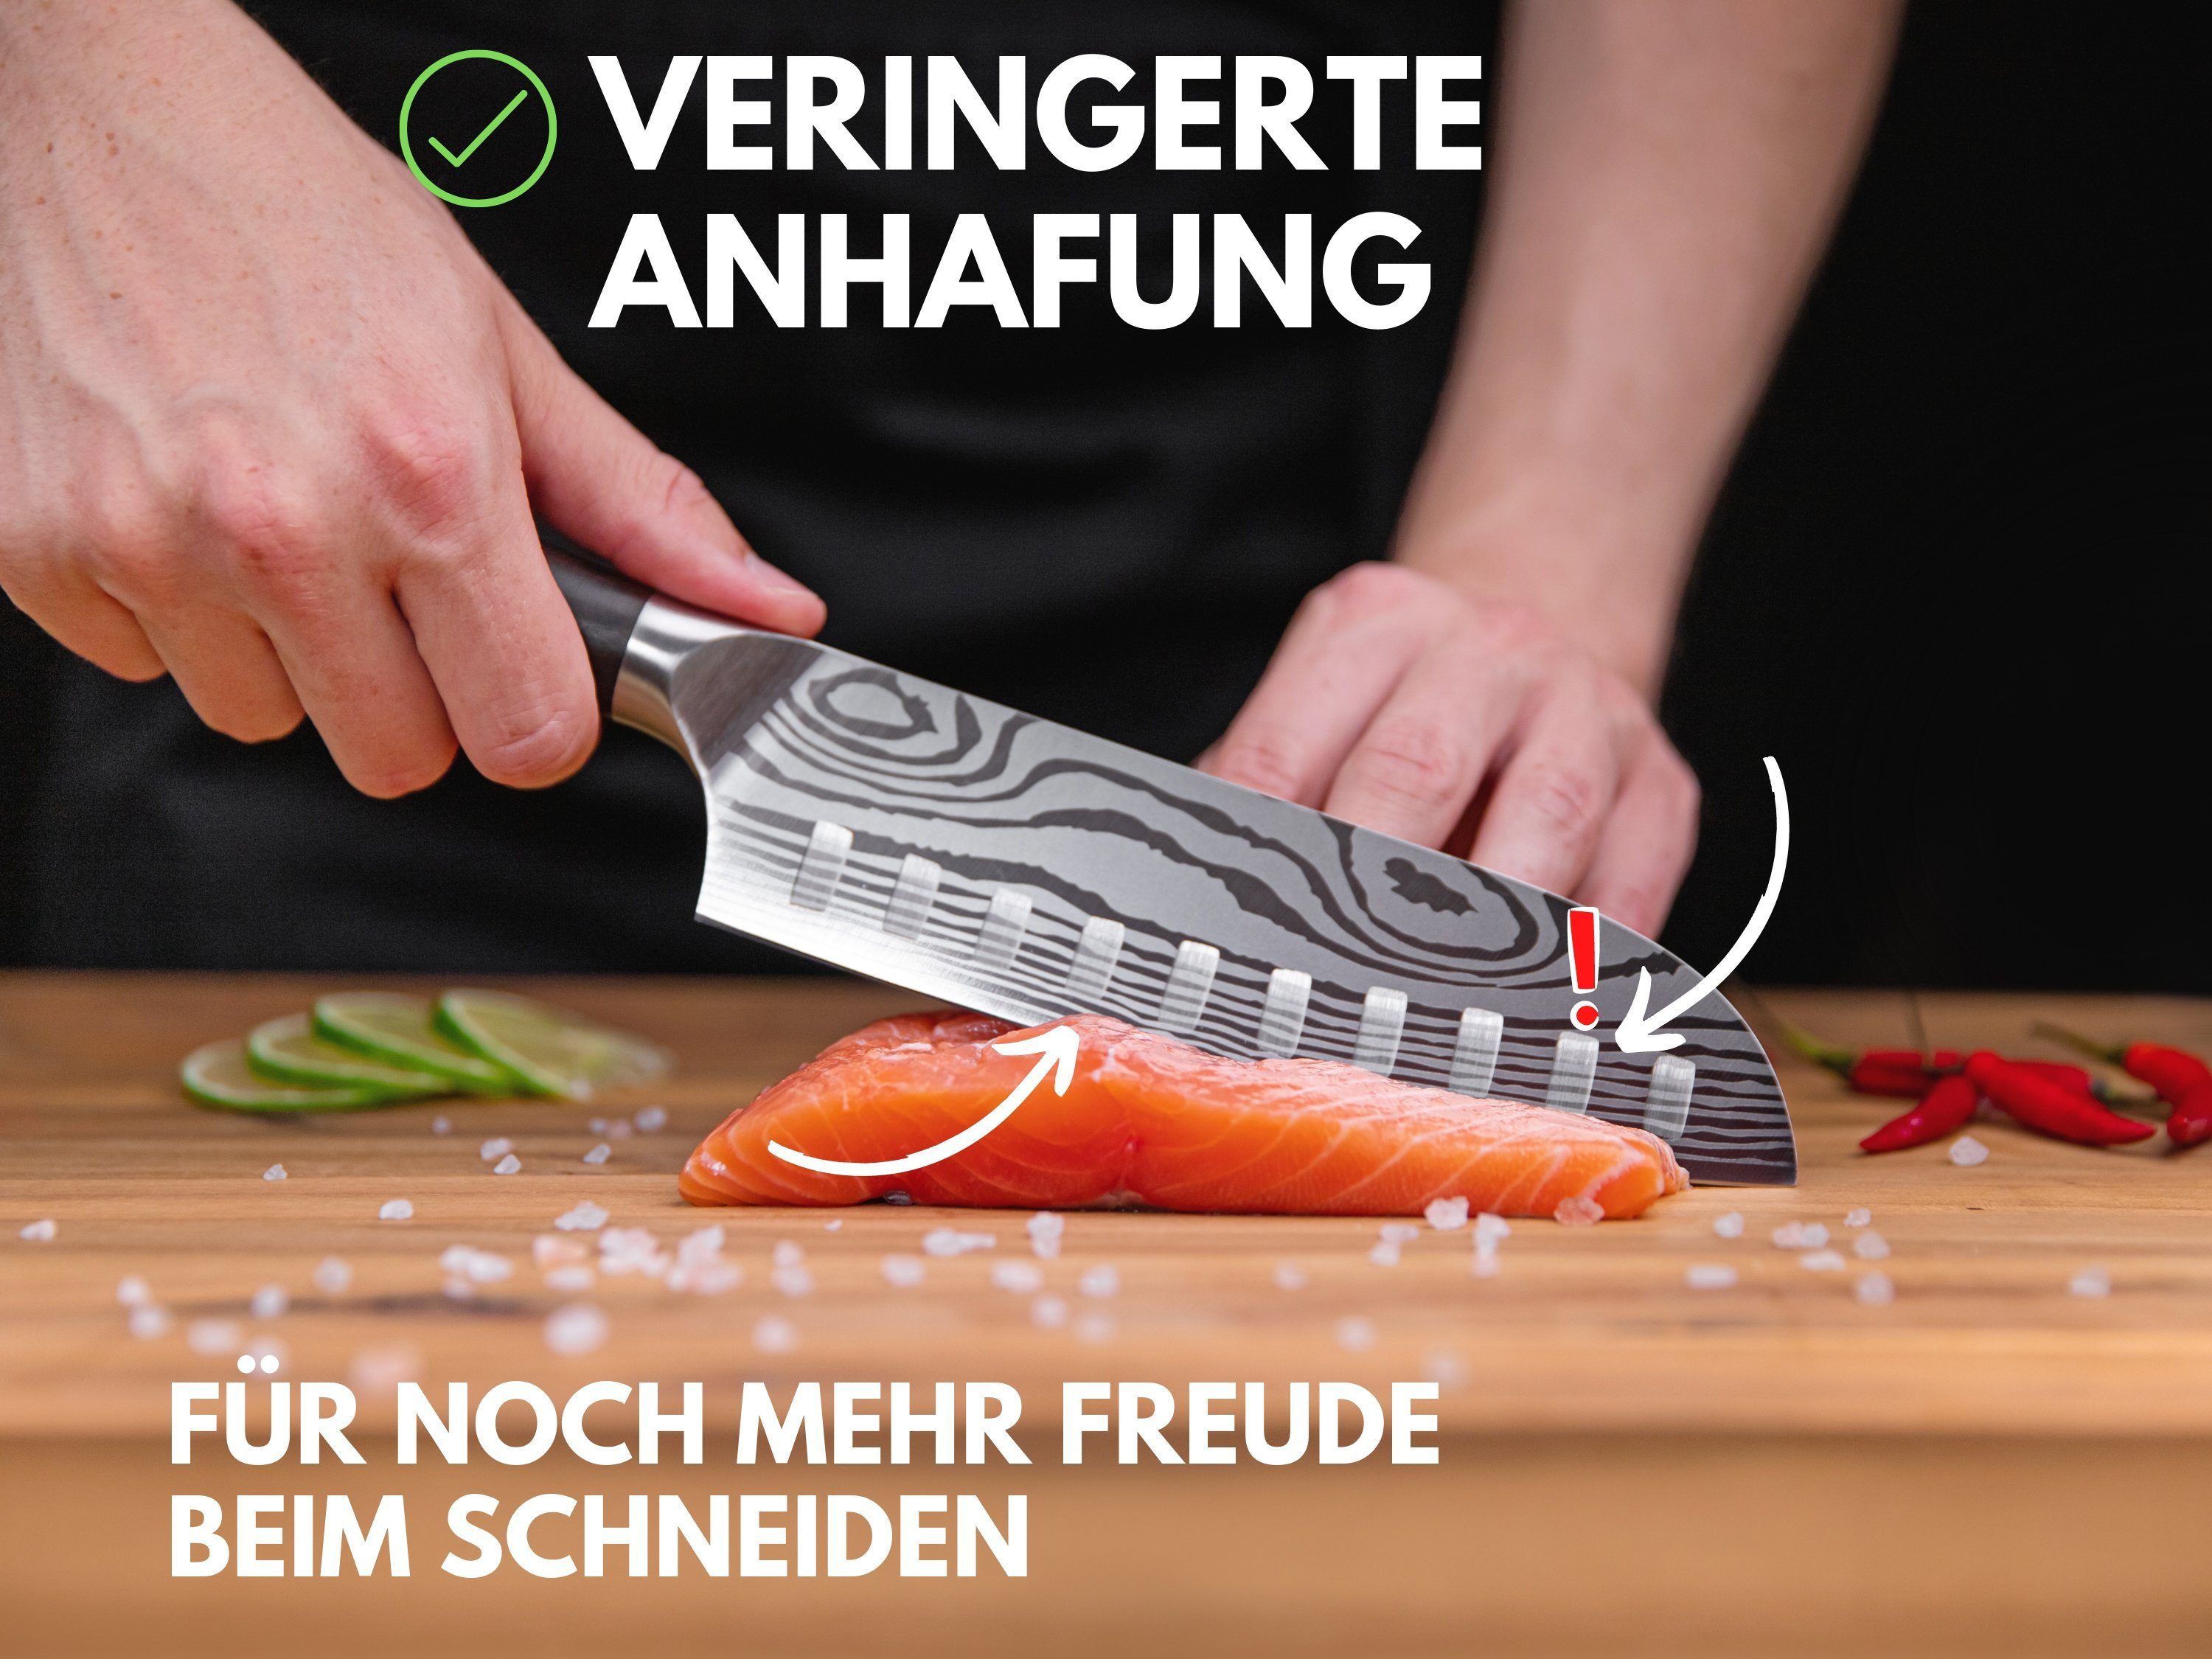 & Sushi - Hannah's & Küchenmesser, Santokumesser rostfreies Santokumesser Homebrand Kochmesser Santokumesser Messer DAMAST-OPTIK